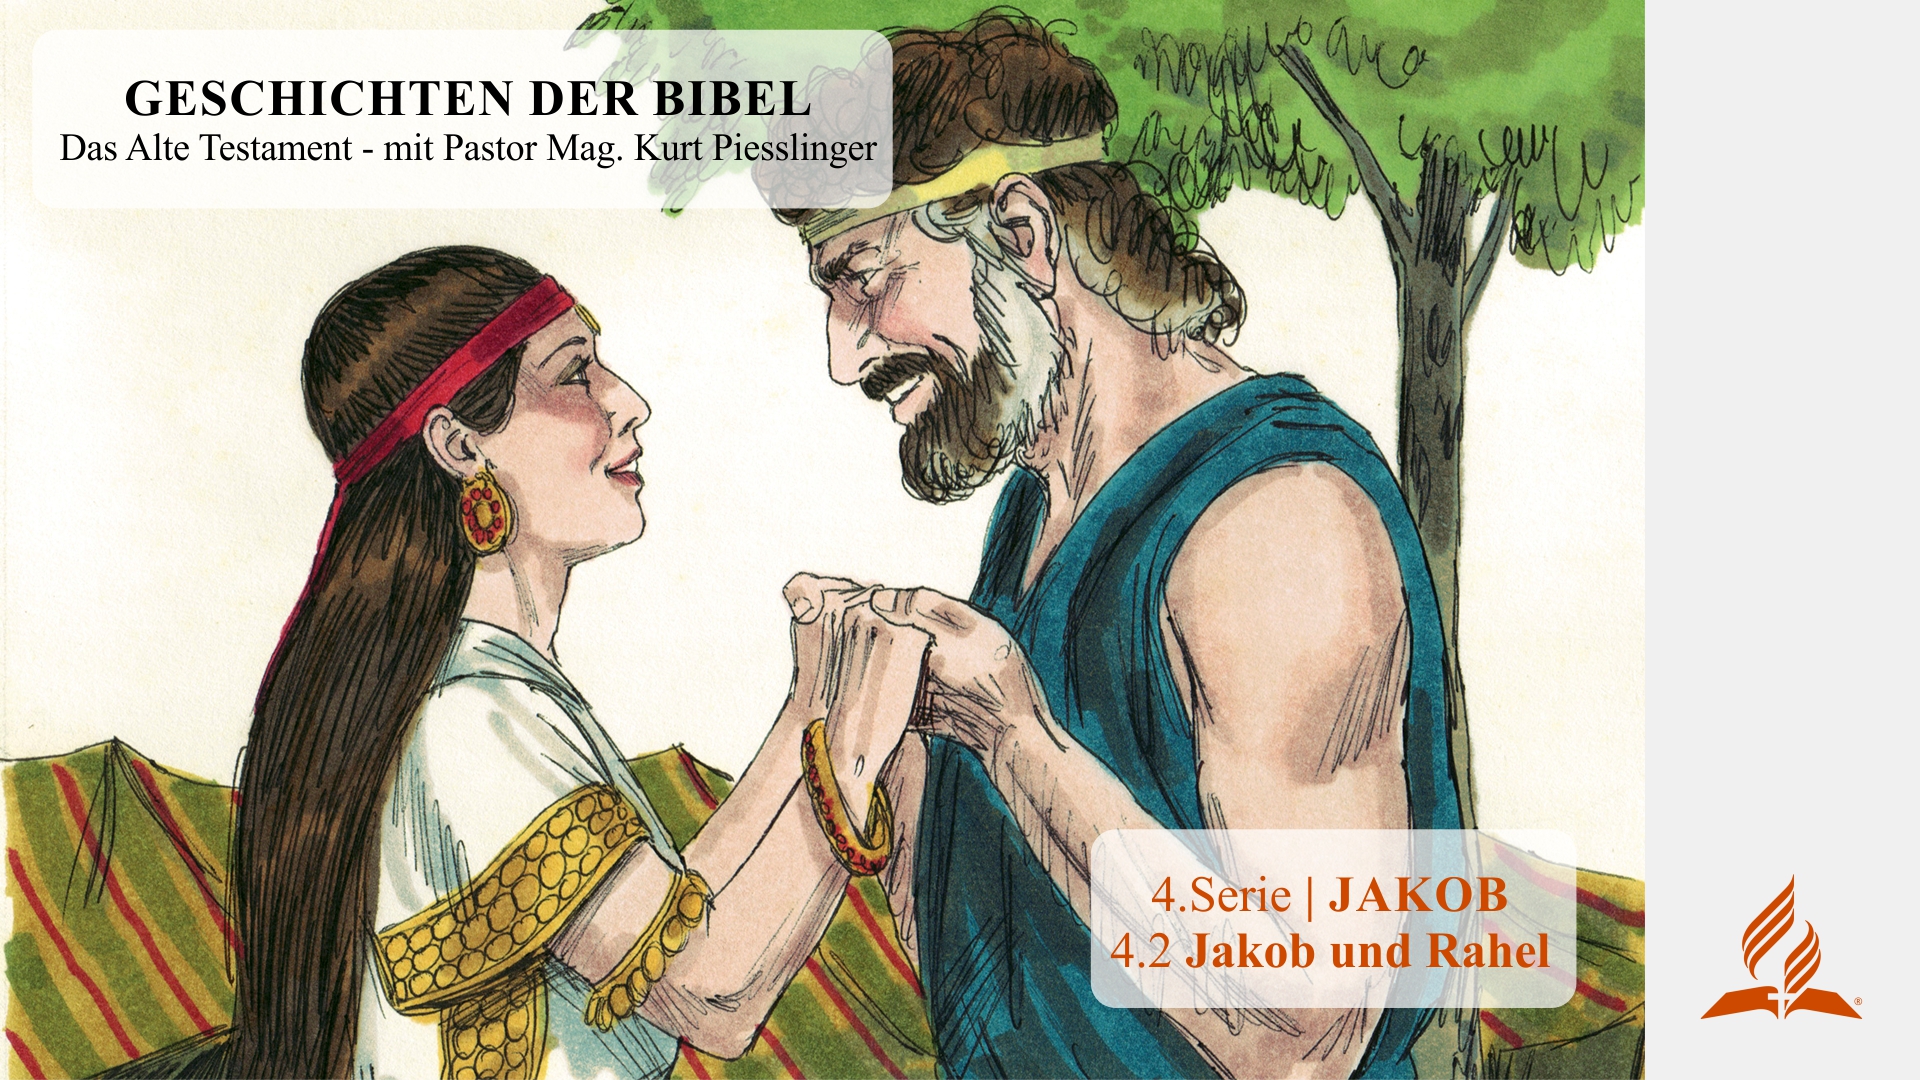 GESCHICHTEN DER BIBEL: 4.2 Jakob und Rahel – 4.JAKOB | Pastor Mag. Kurt Piesslinger